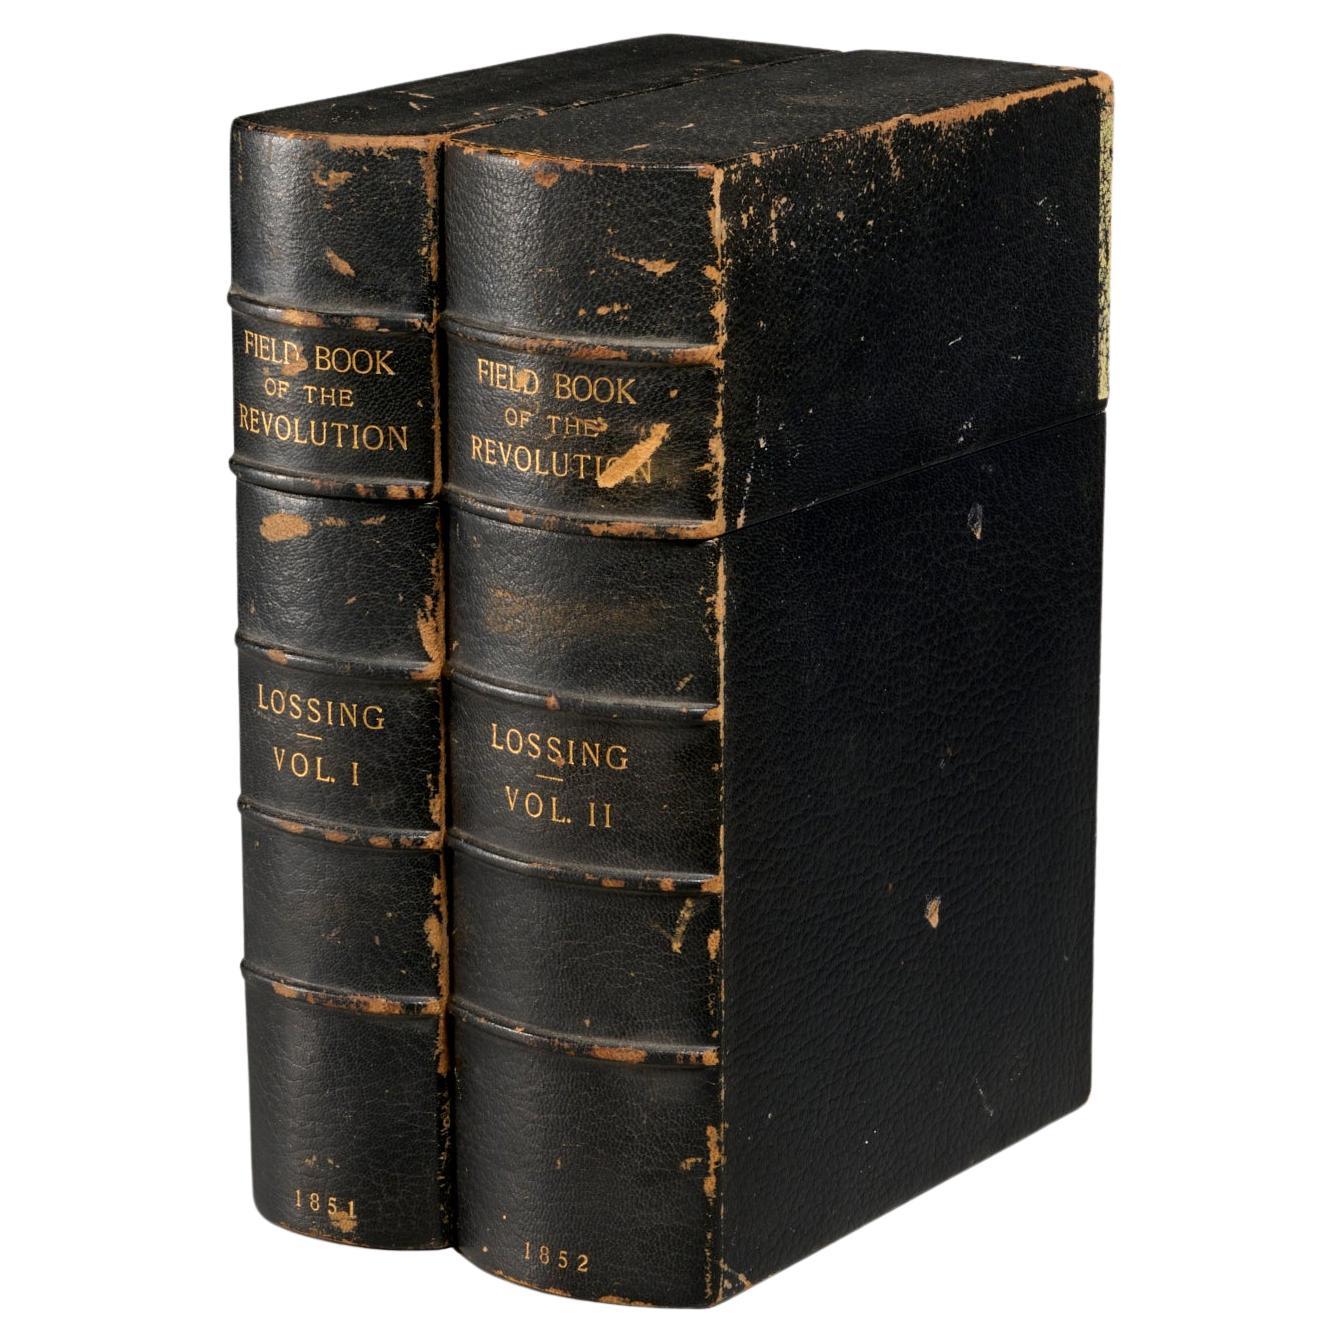 Le livre pictural de la Révolution, 1851, (2) volumes, Benson J. Lossing